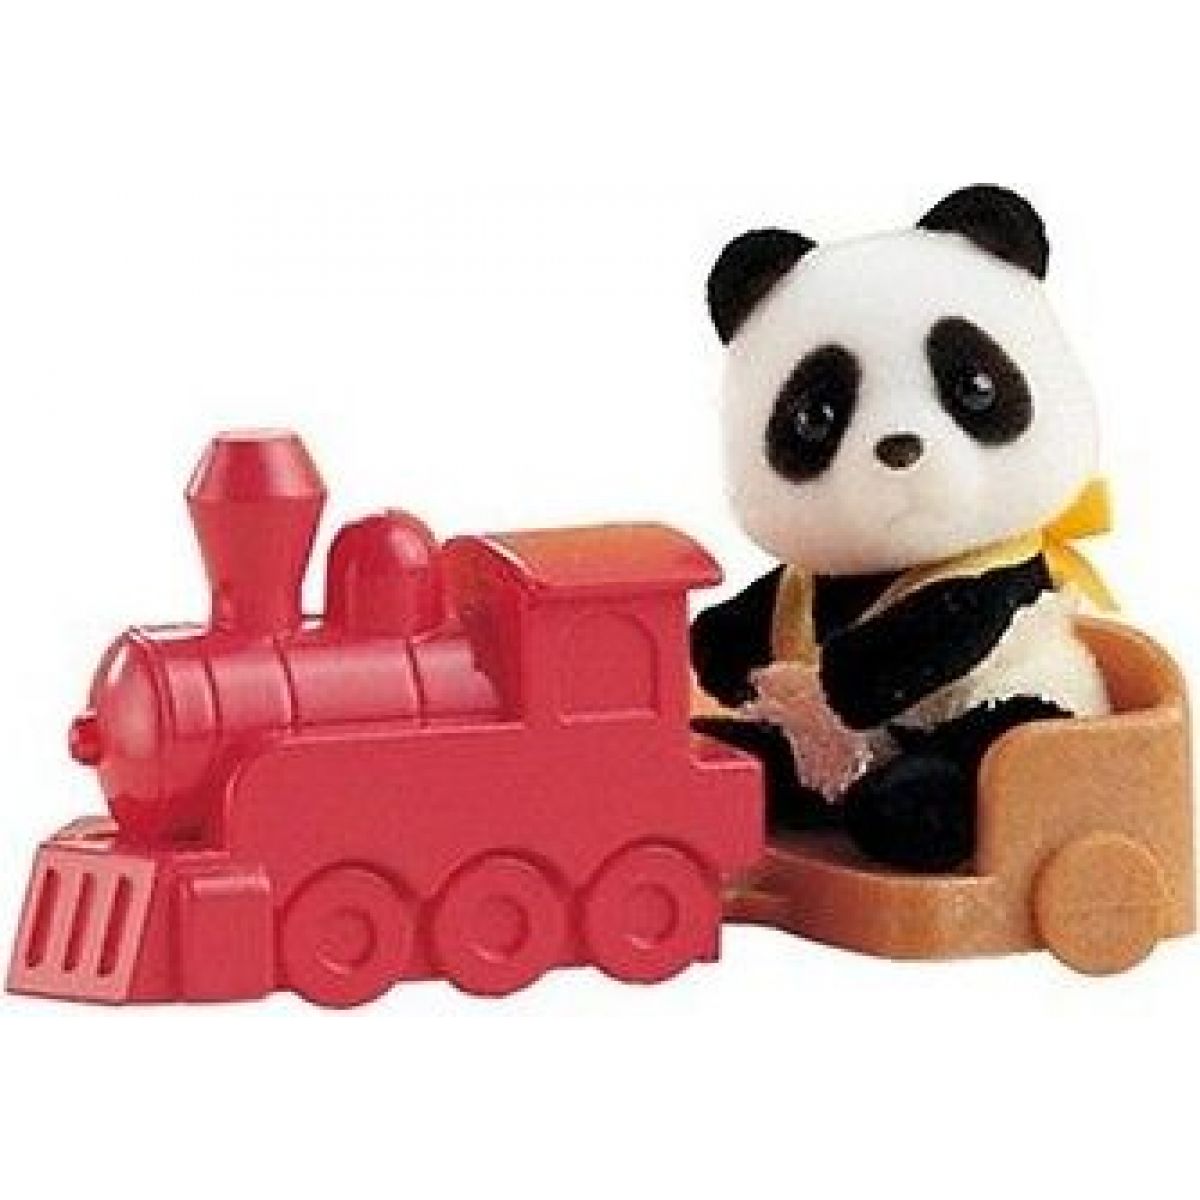 Sylvanian Families Baby příslušenství - panda, méďa a veverka si hrají doma - Panda